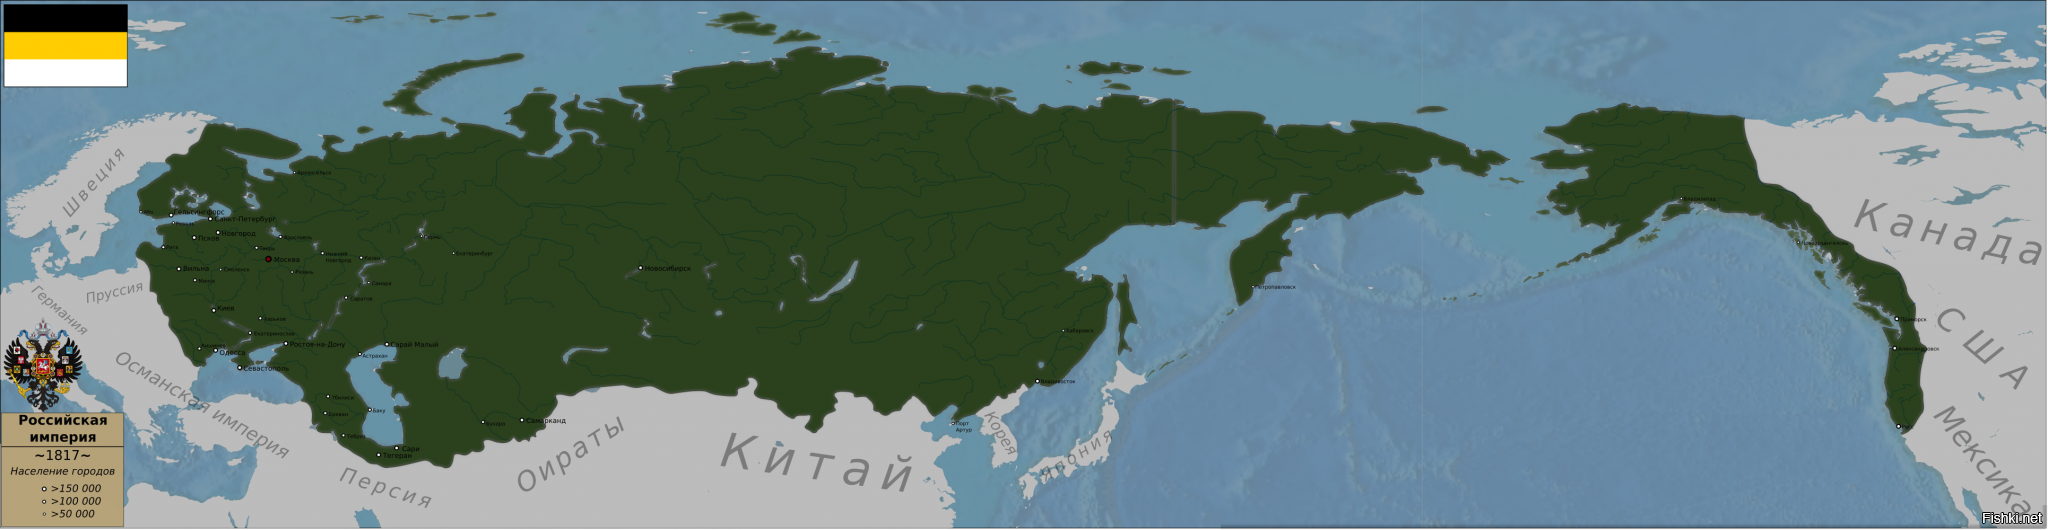 Карта Российской империи с алясуоцй